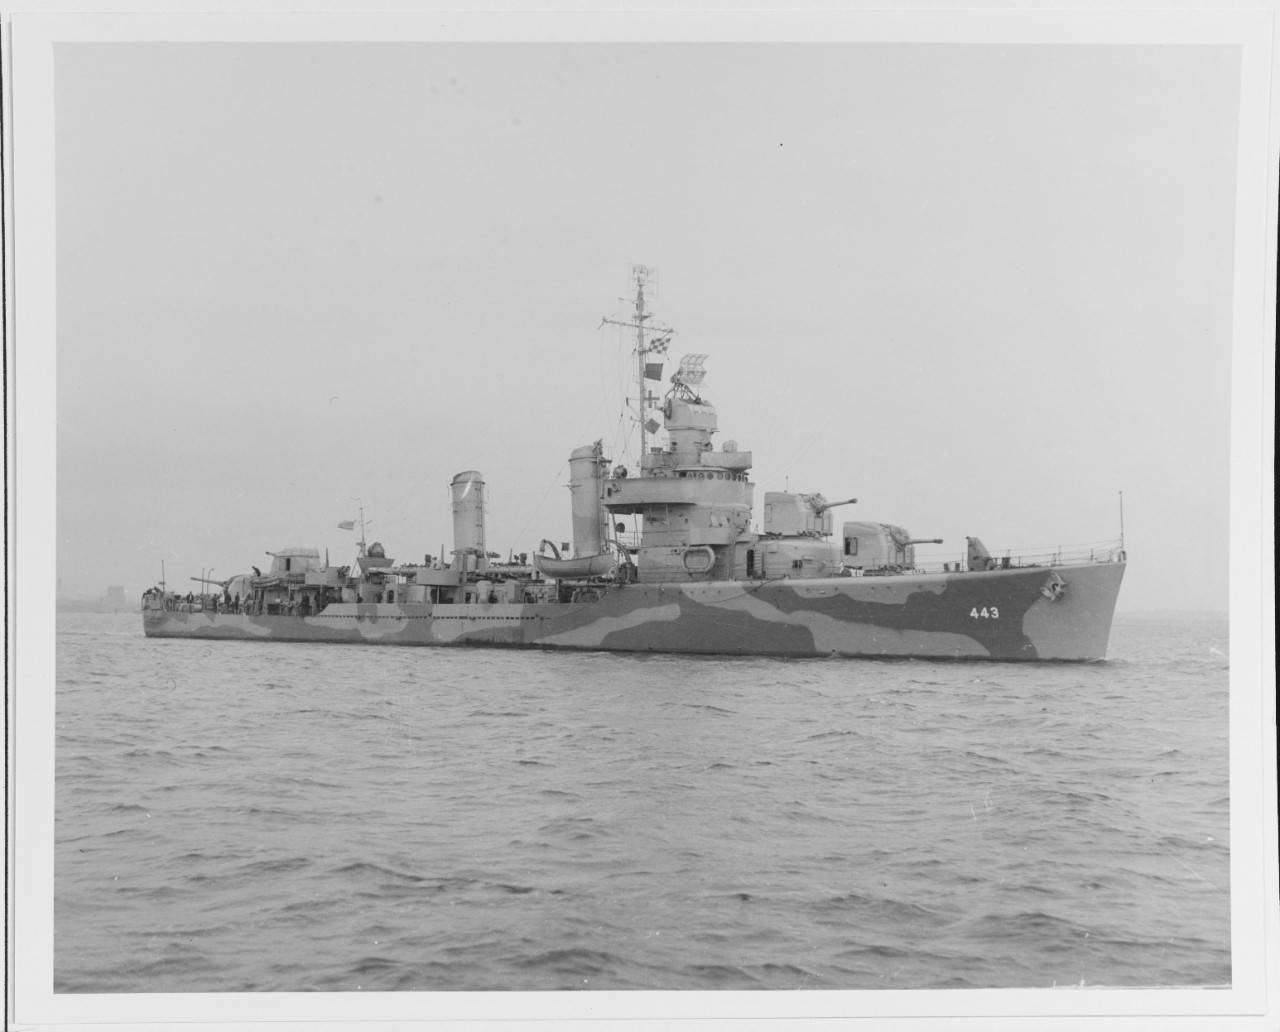 USS SWANSON (DD-443)